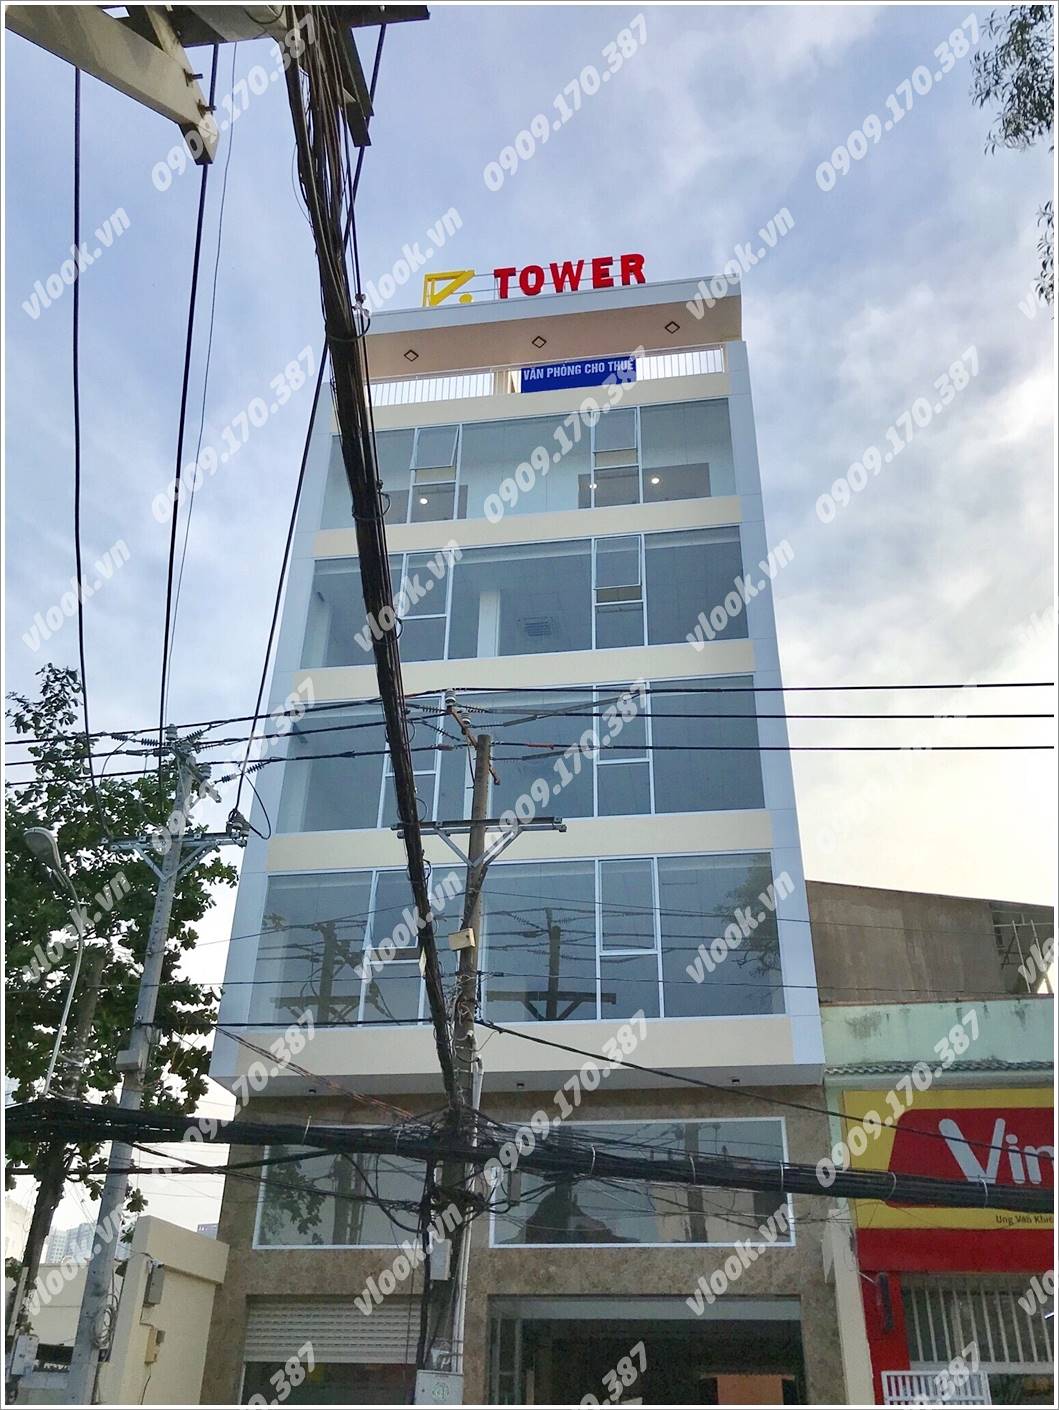 Cao ốc cho thuê văn phòng Tài Vượng Tower, Quận Bình Thạnh, TPHCM - vlook.vn